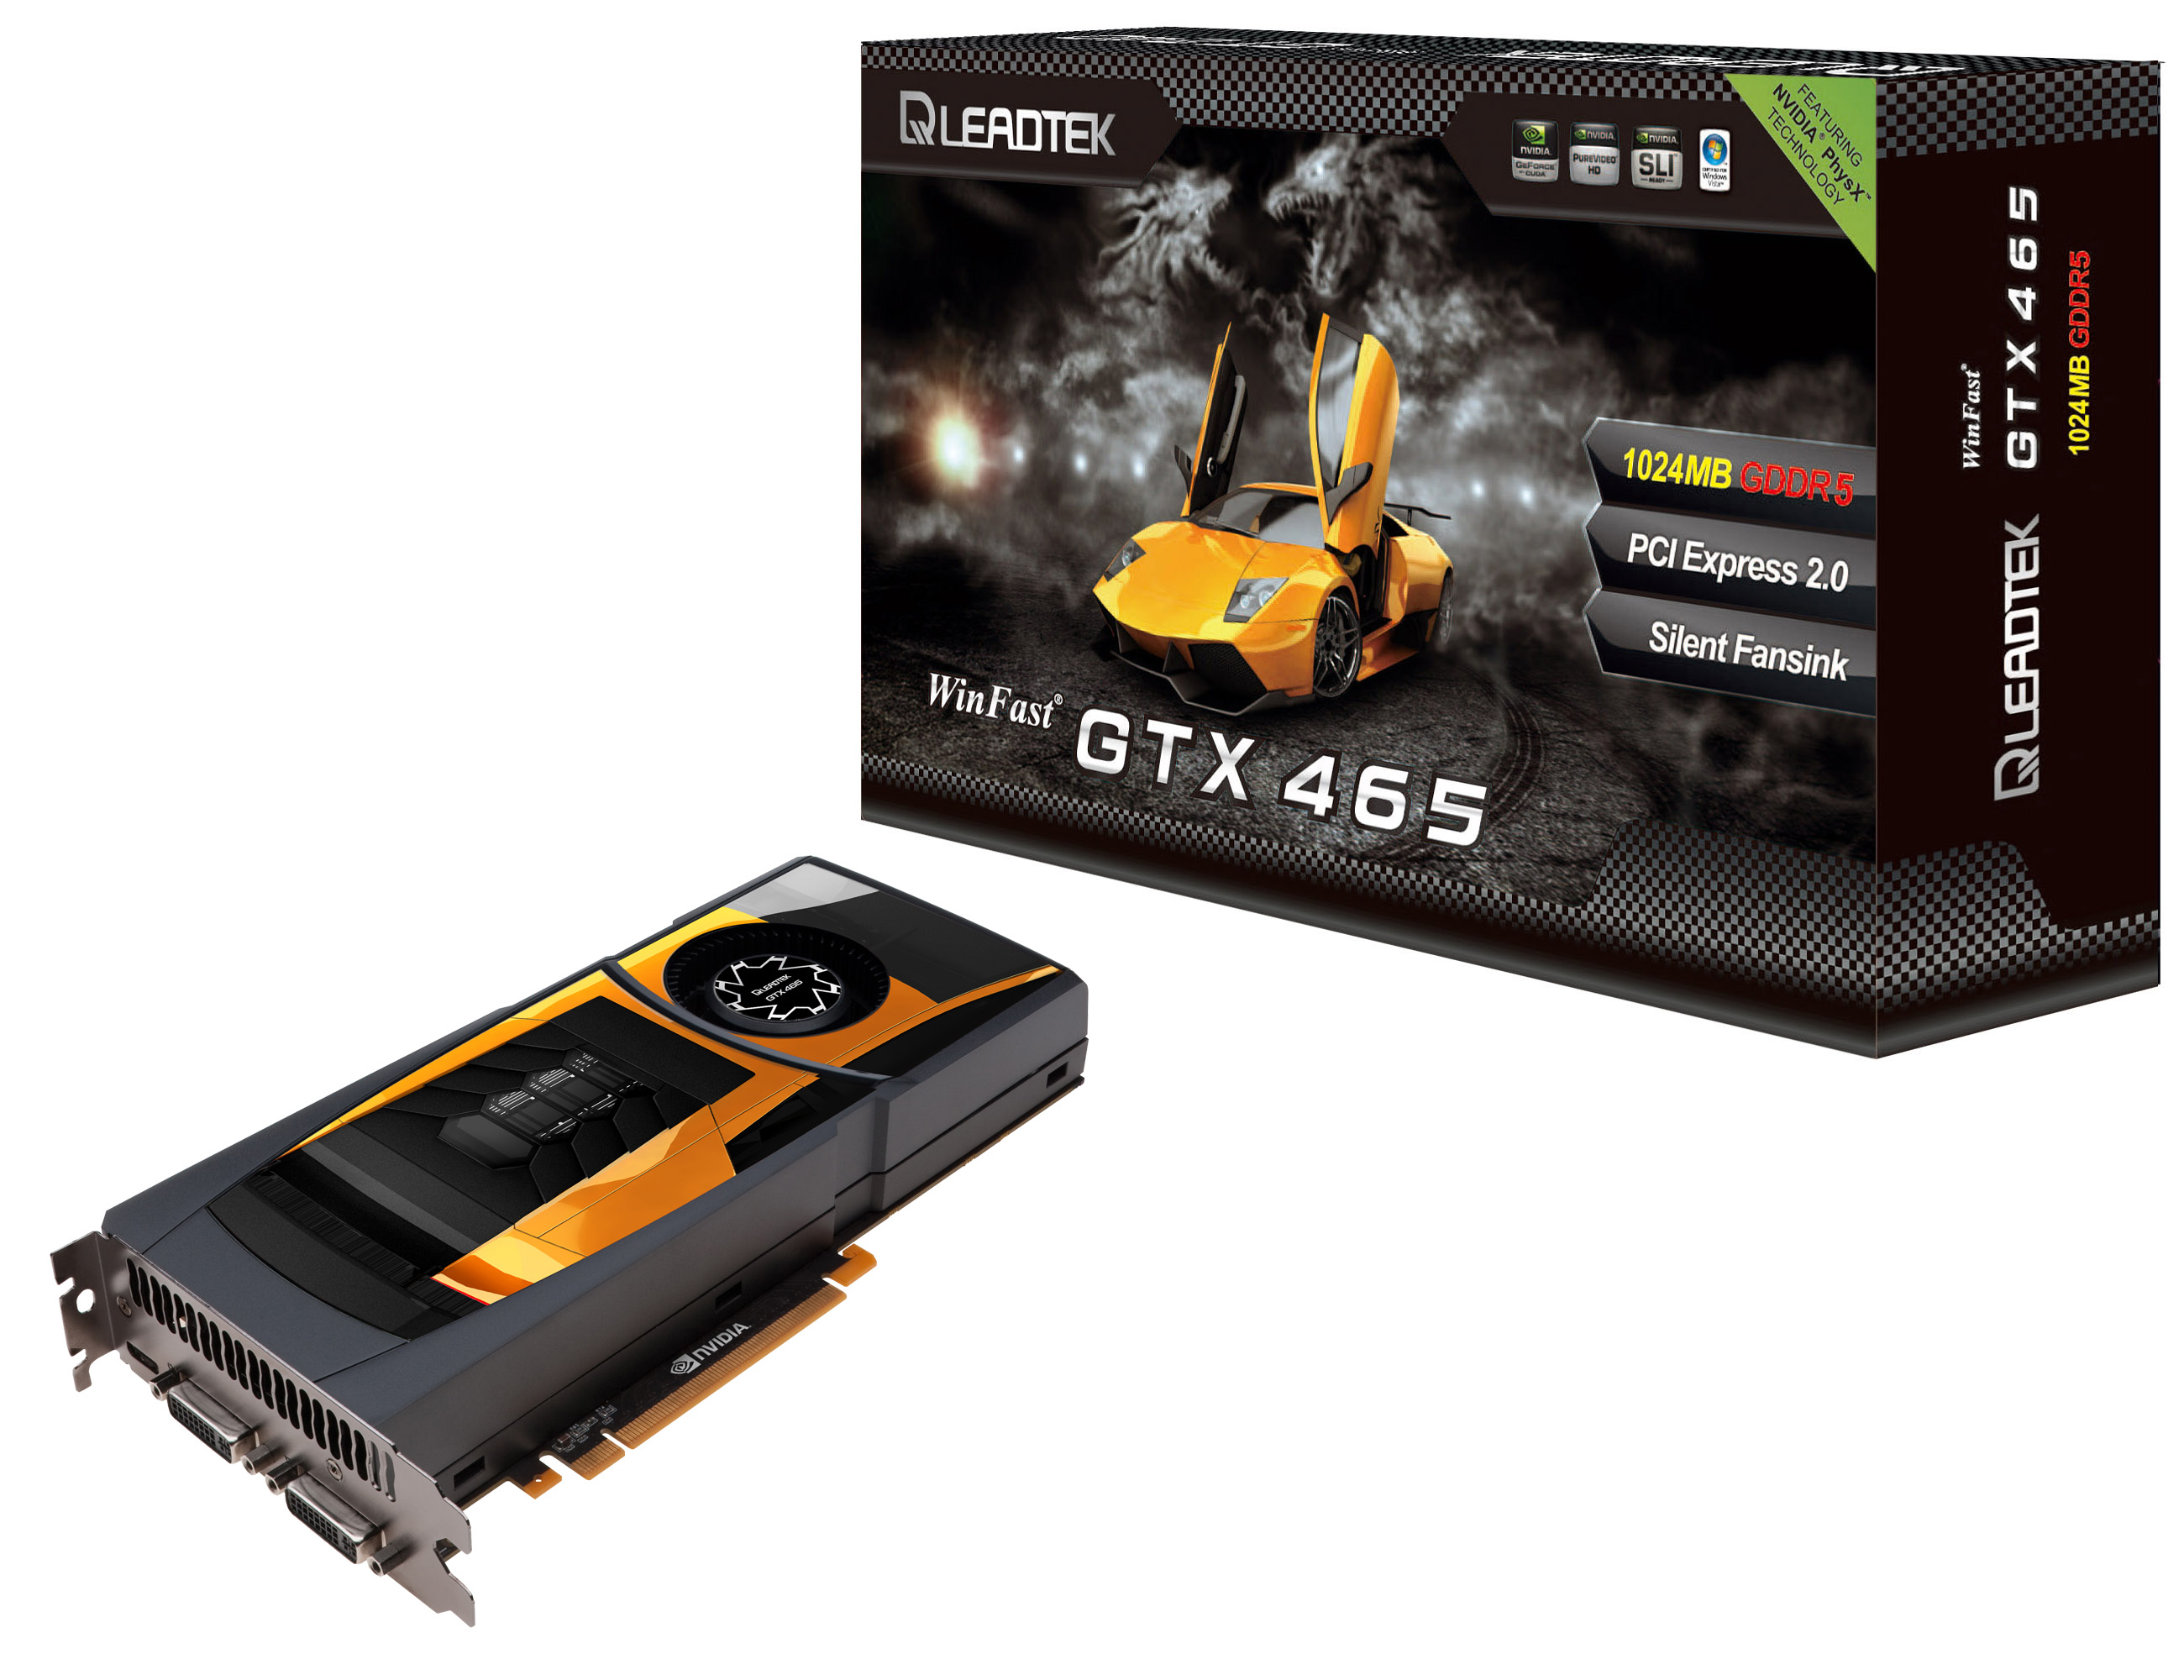 麗臺科技WinFast® GTX 465顯示卡飆速上市